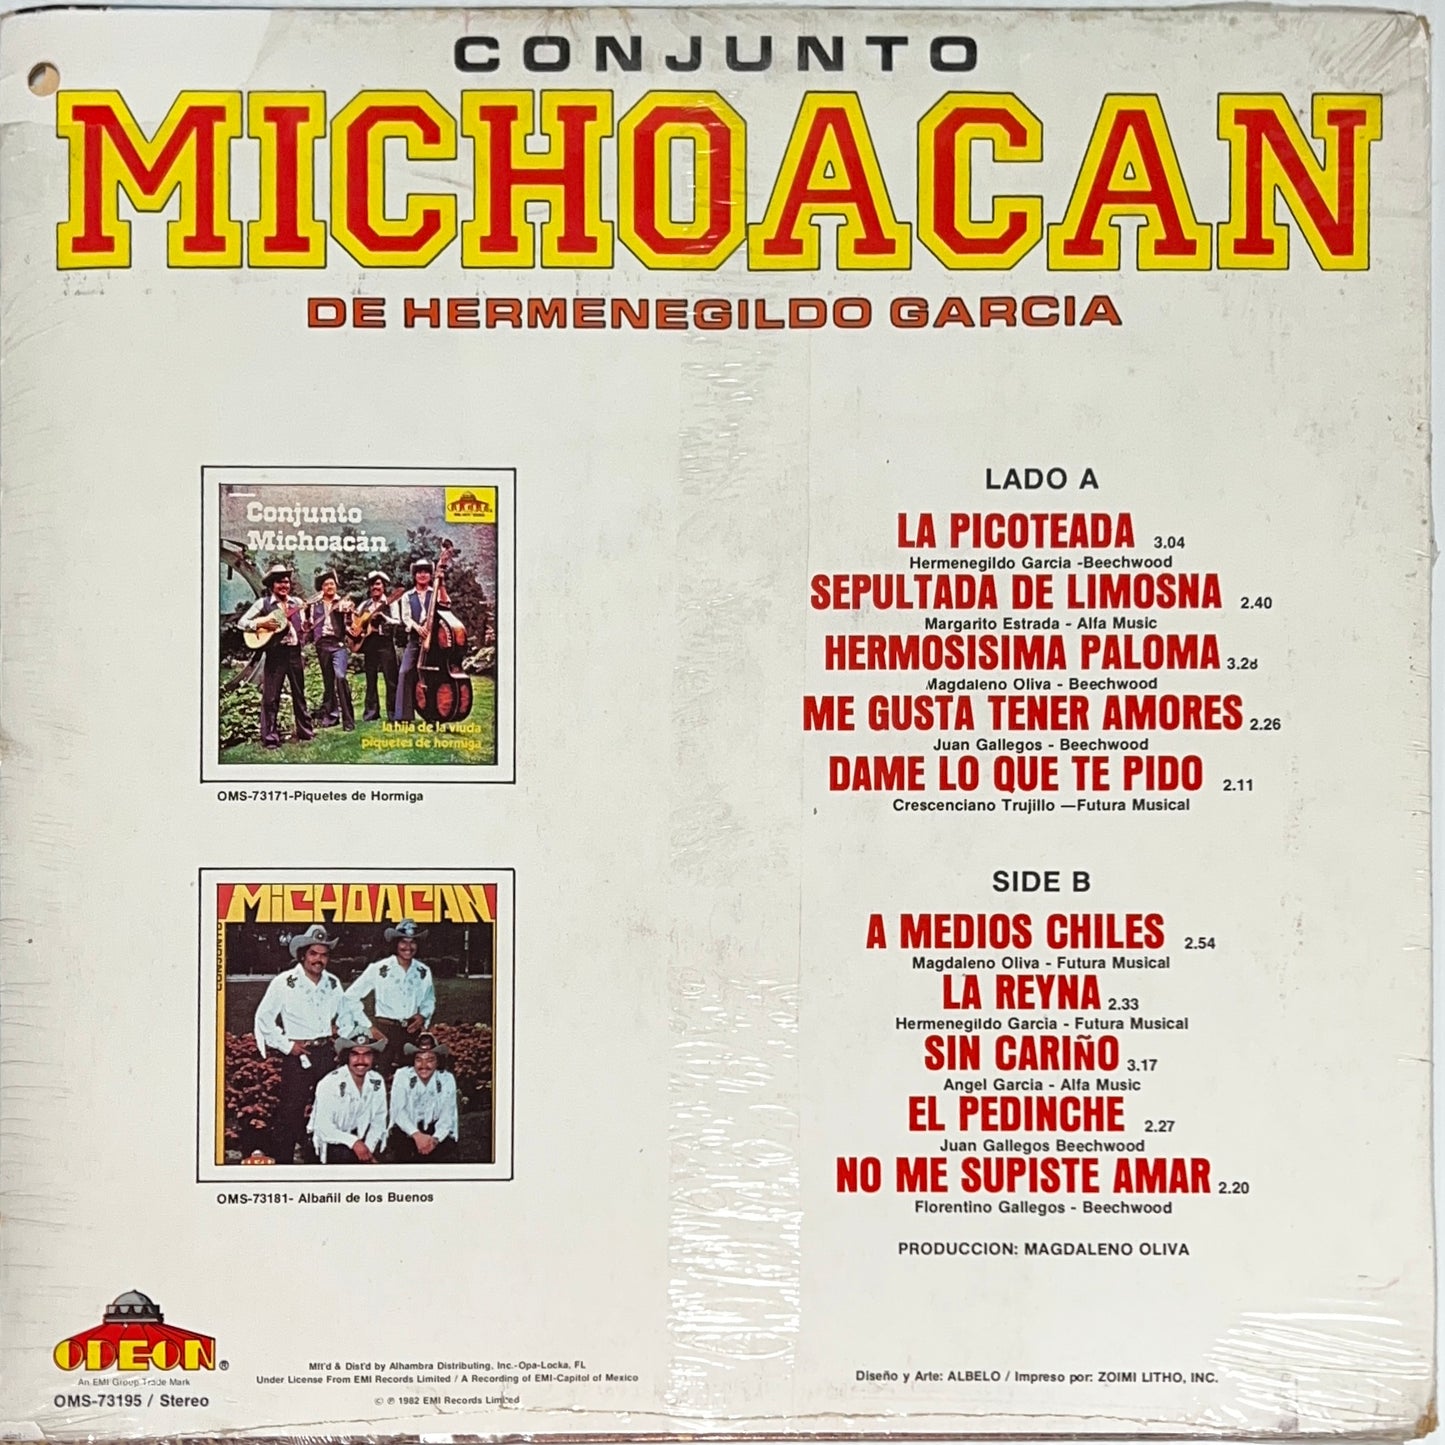 Conjunto Michocan de Hermenegildo Garcia - La Picoteada (Sealed Vinyl)